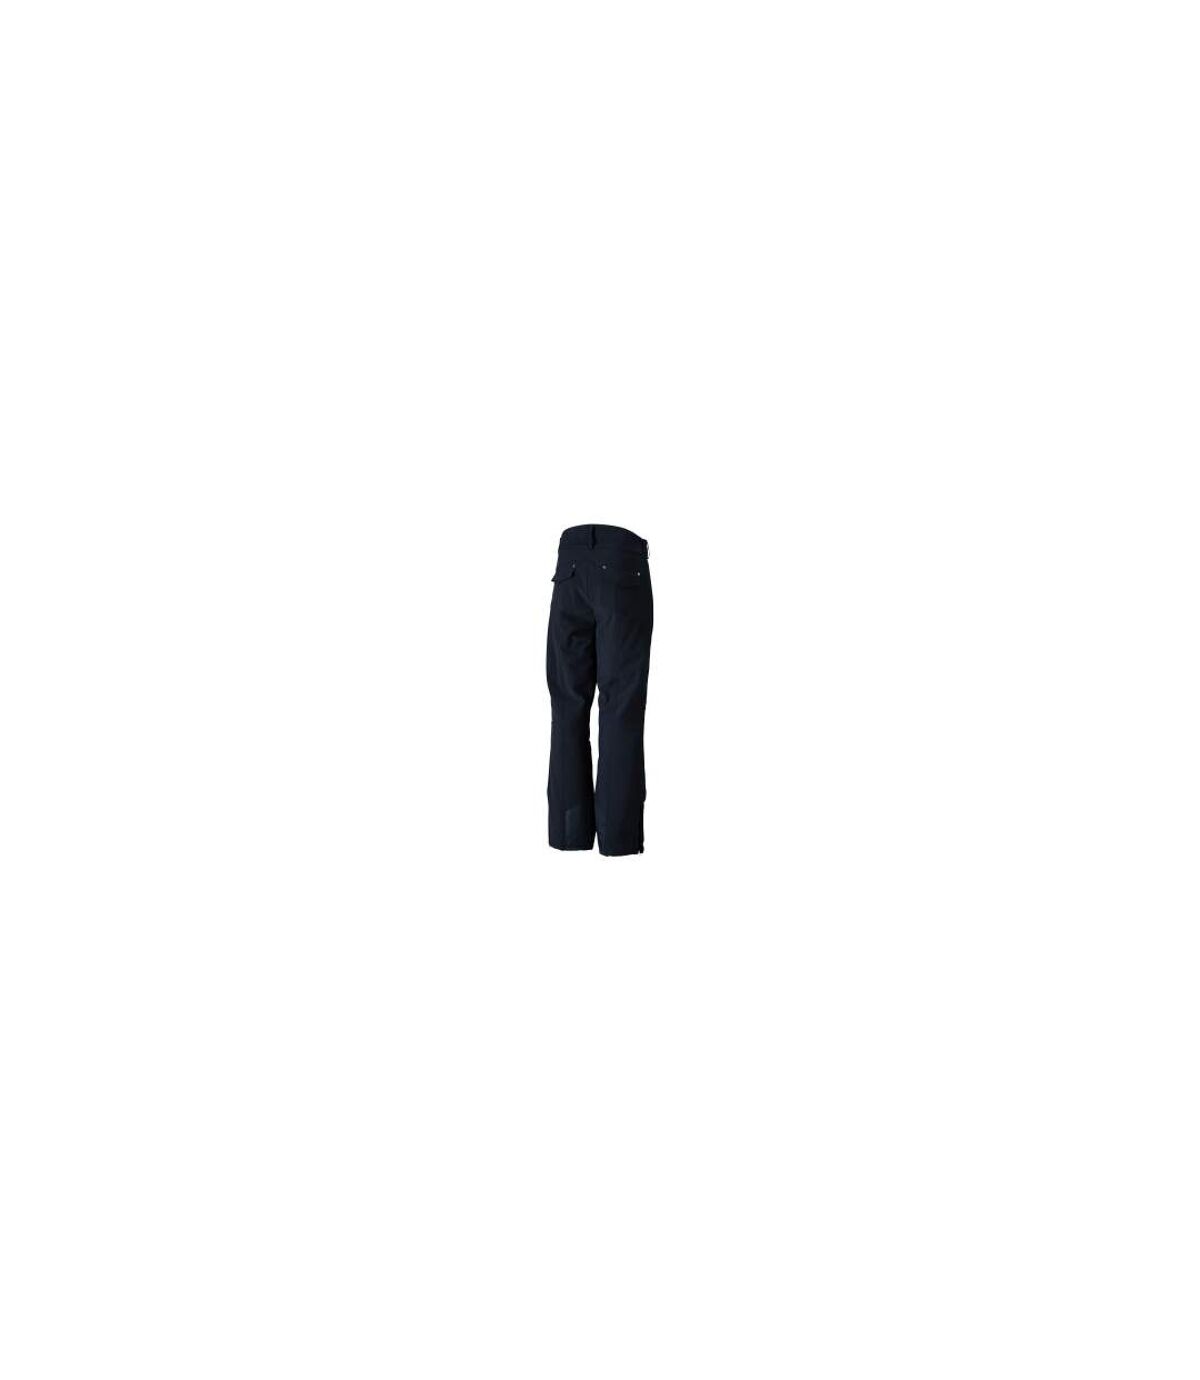 Pantalon ski homme noir - JN1052